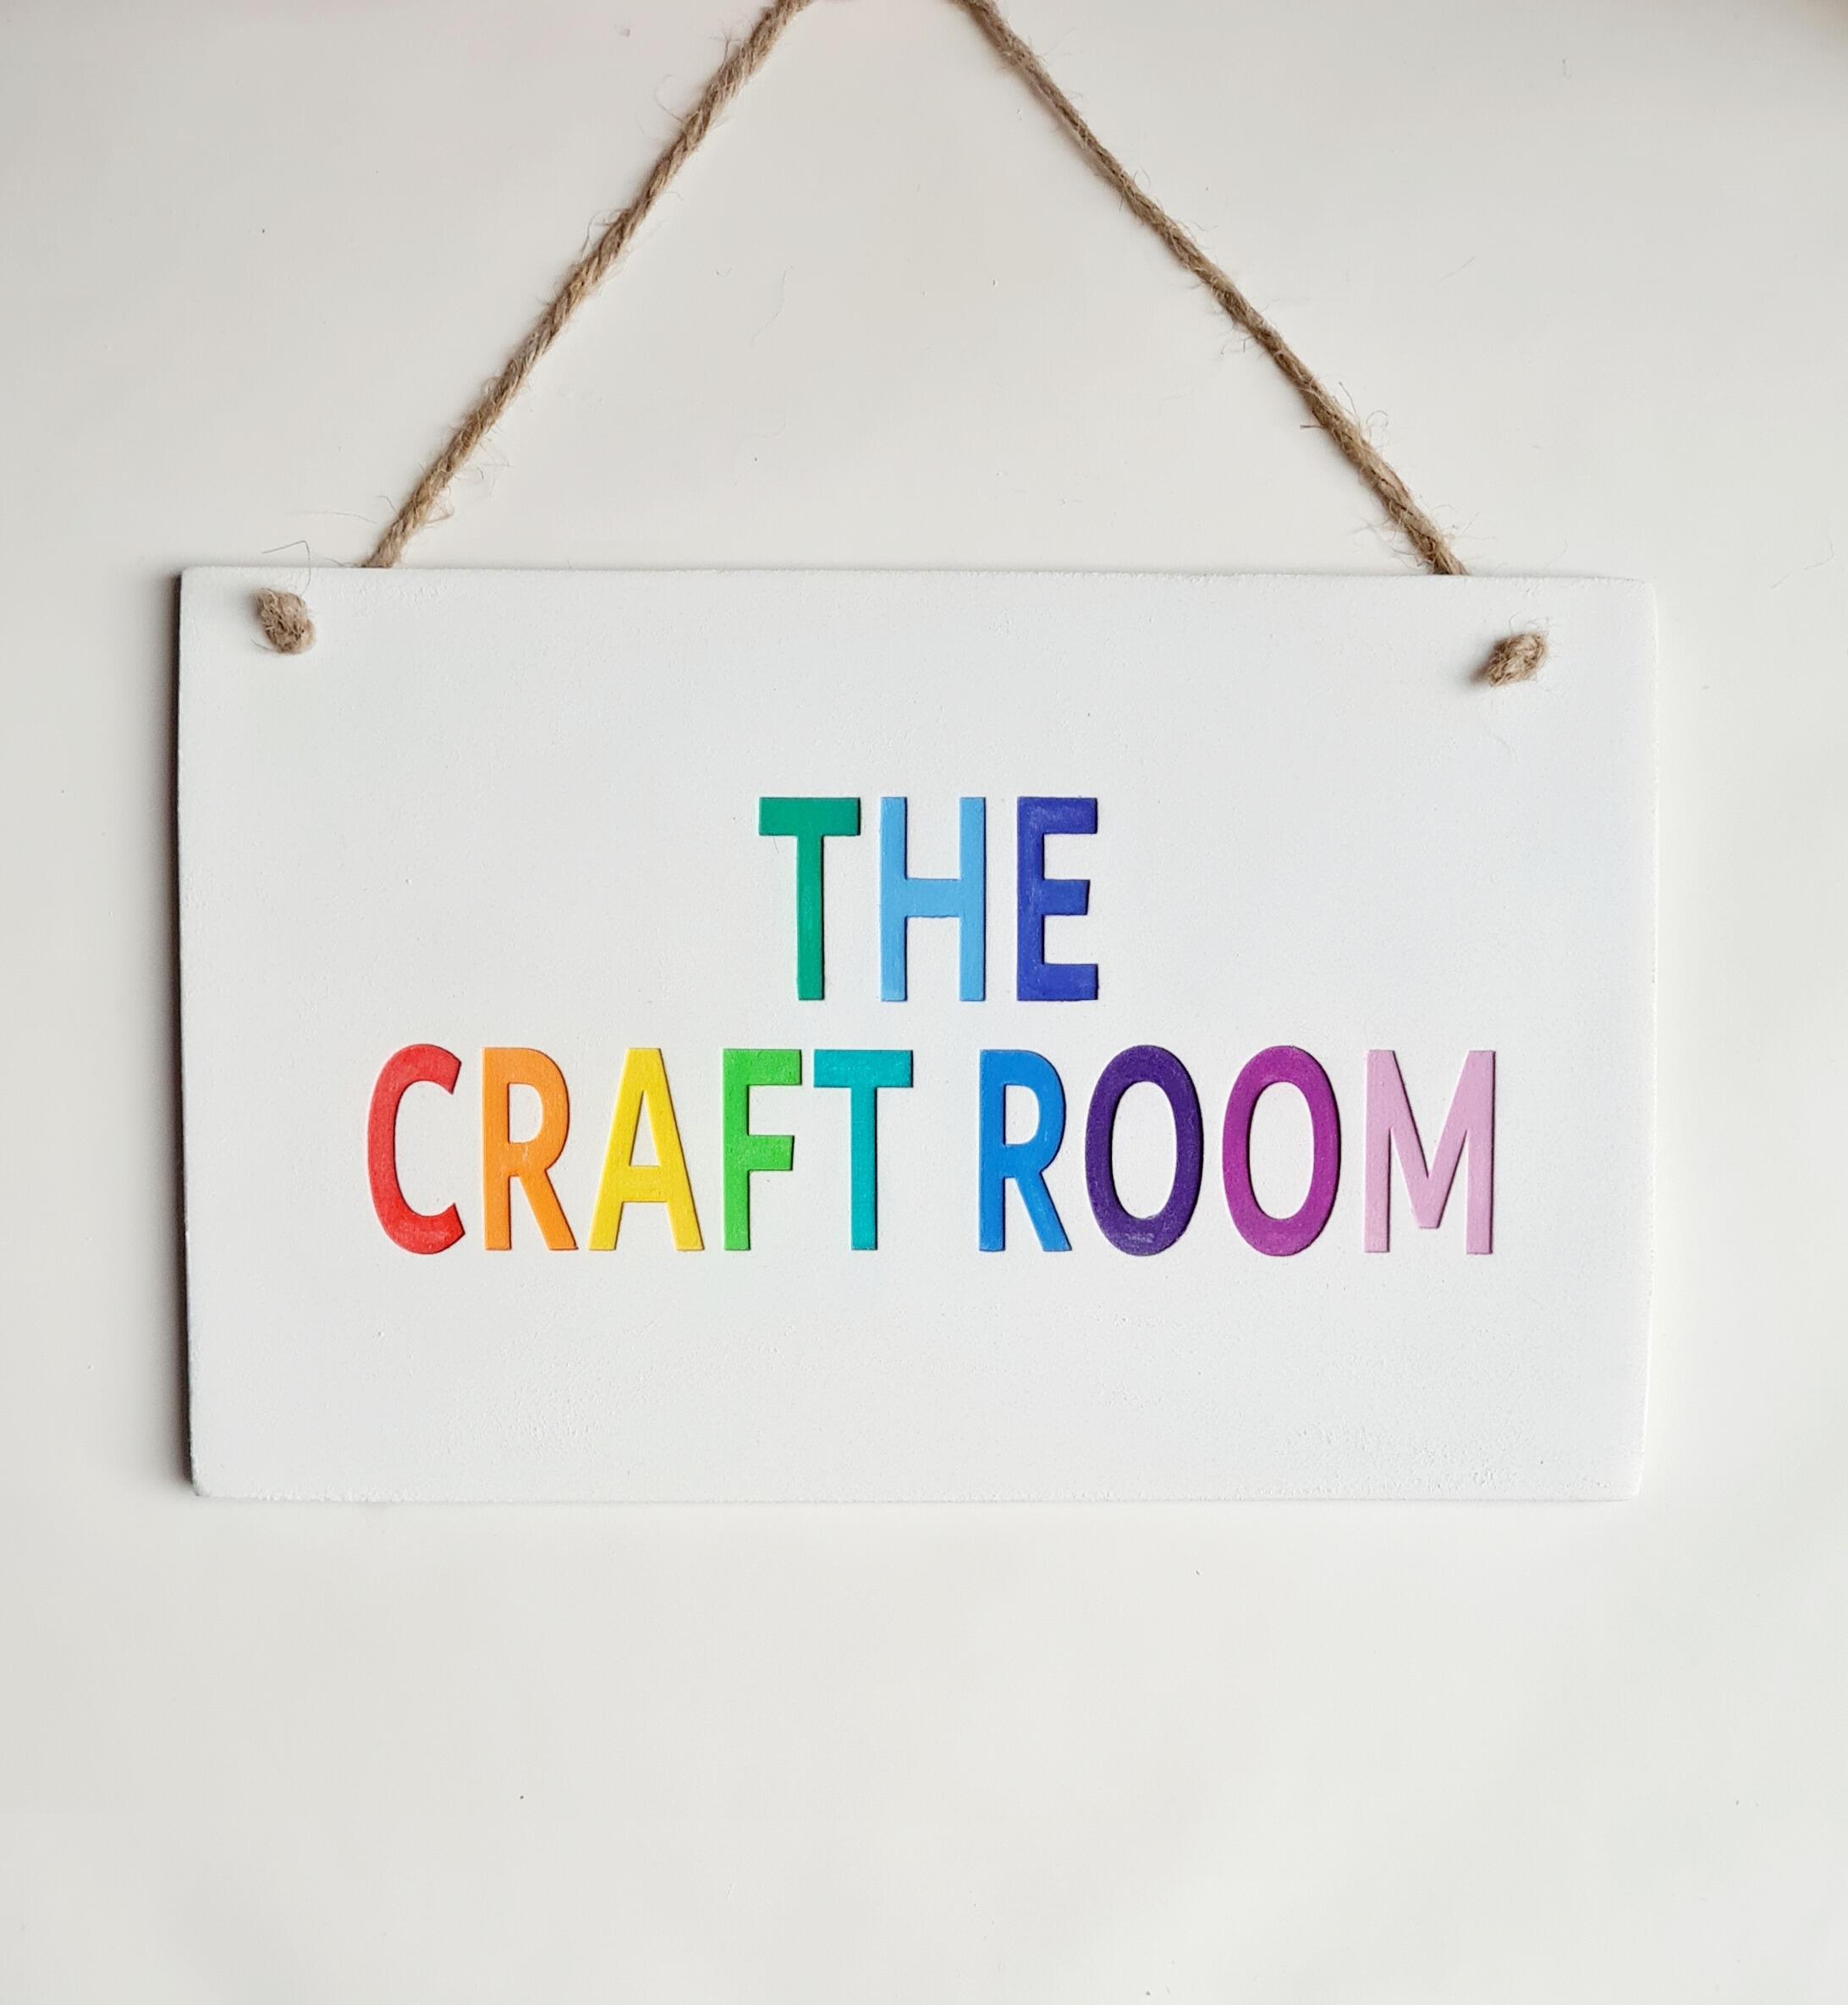 The craft room rainbow door sign